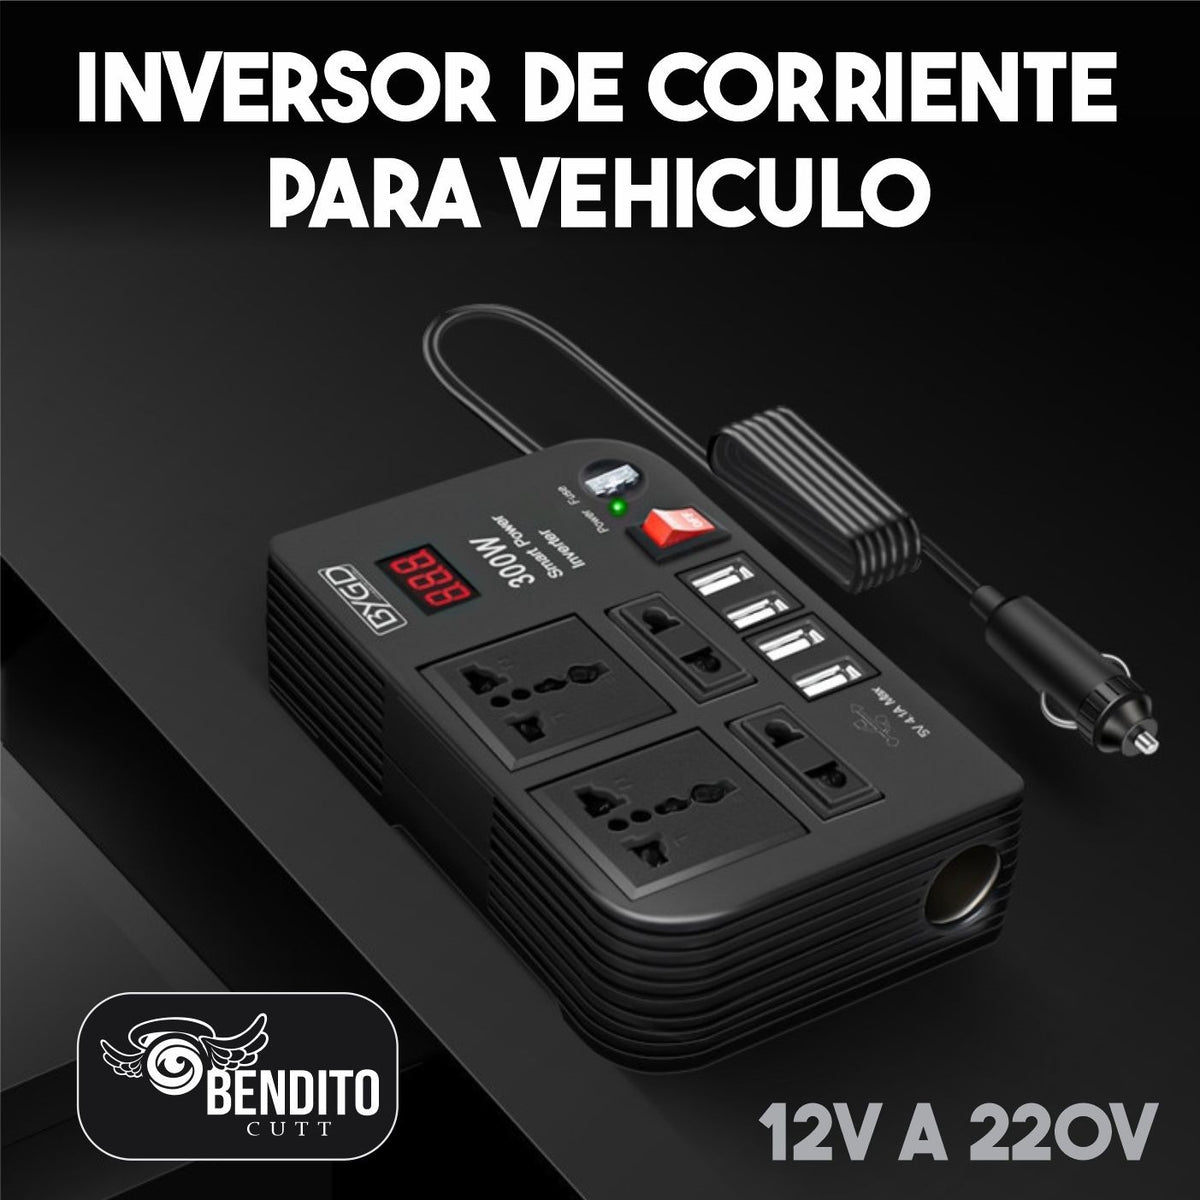 Inversor de corriente para auto de 12V a 220V ™ – BenditoCutt